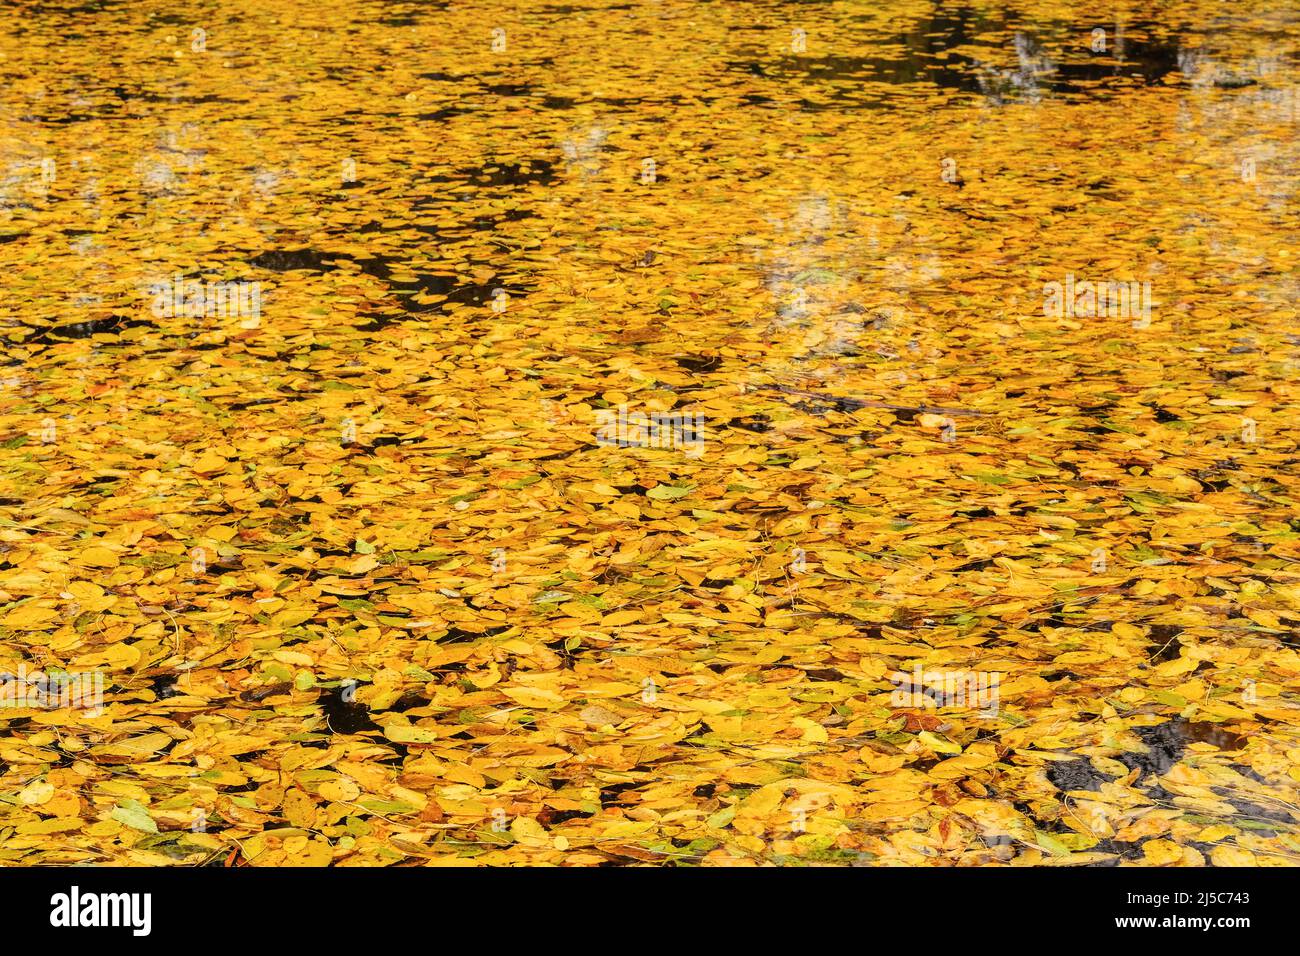 Draufsicht auf die herbstlich leuchtend goldenen Blätter im Wasser. Gelbe verschiedene Blätter zum Schwimmen auf dem Wasser. Sonnig im Herbst. Stockfoto